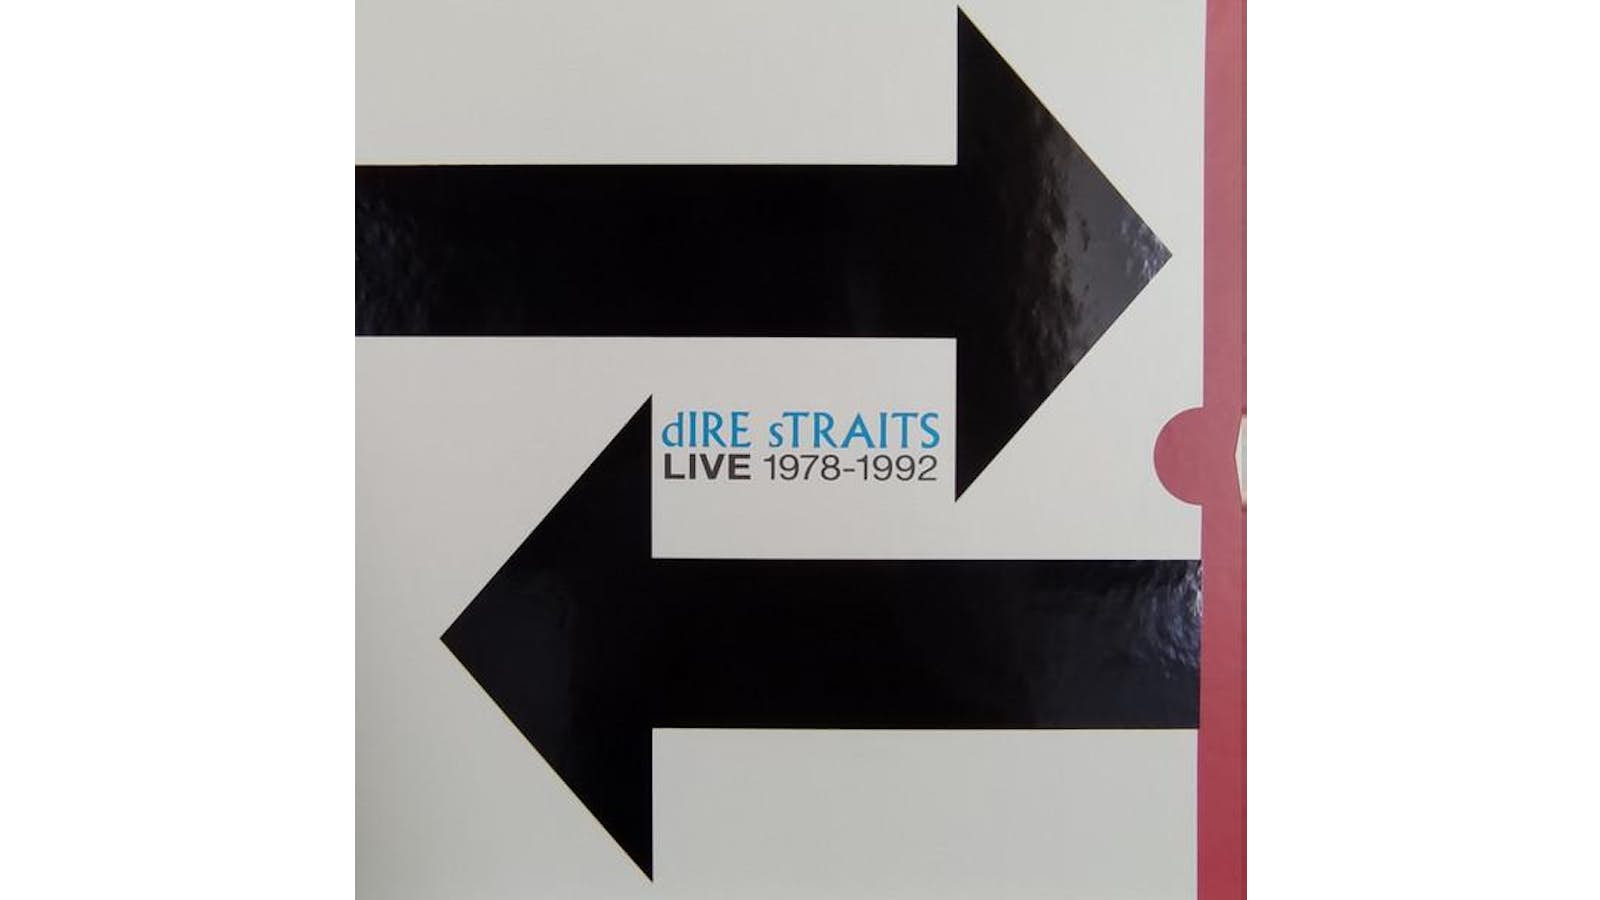 DIRE STRAITS - The Live Albums: 1978-1992, [Black Vinyl LP]